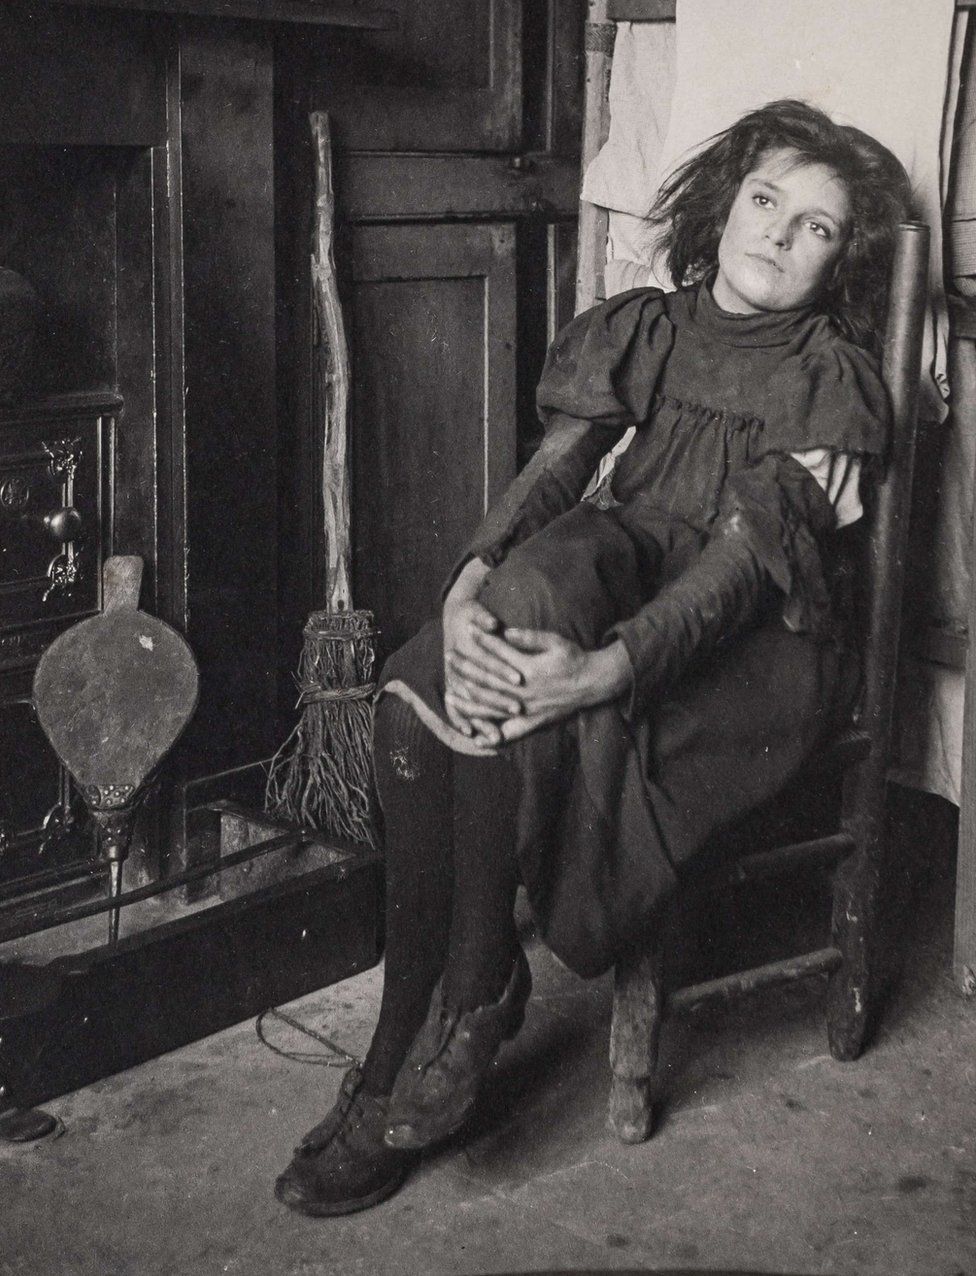 Portrait of woman in Dorset taken before 1914